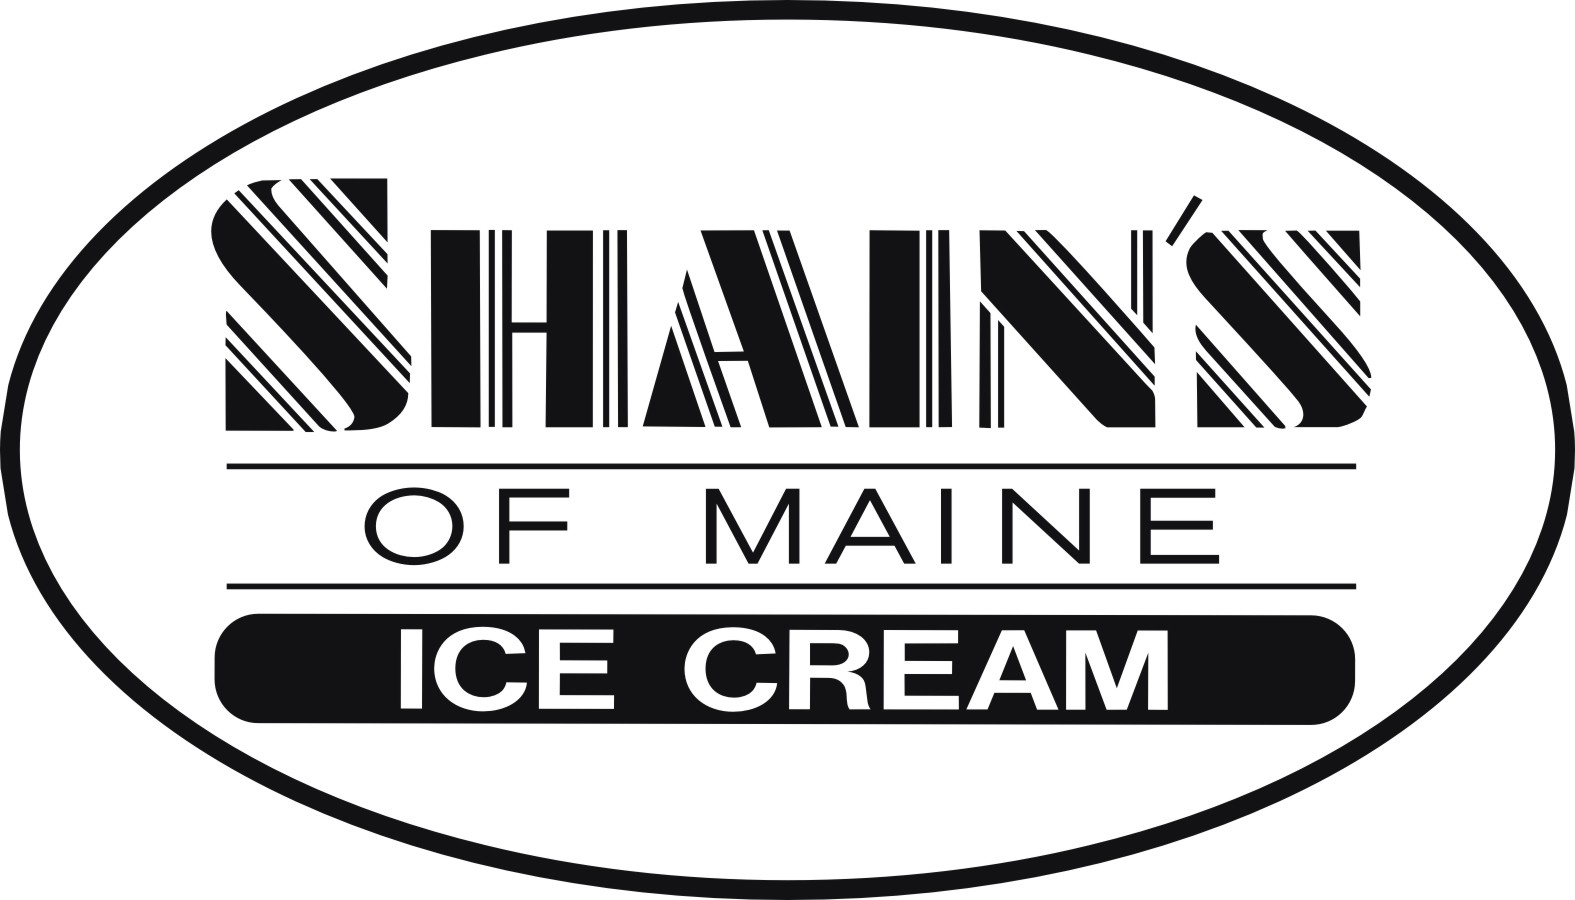 Shain's of Maine